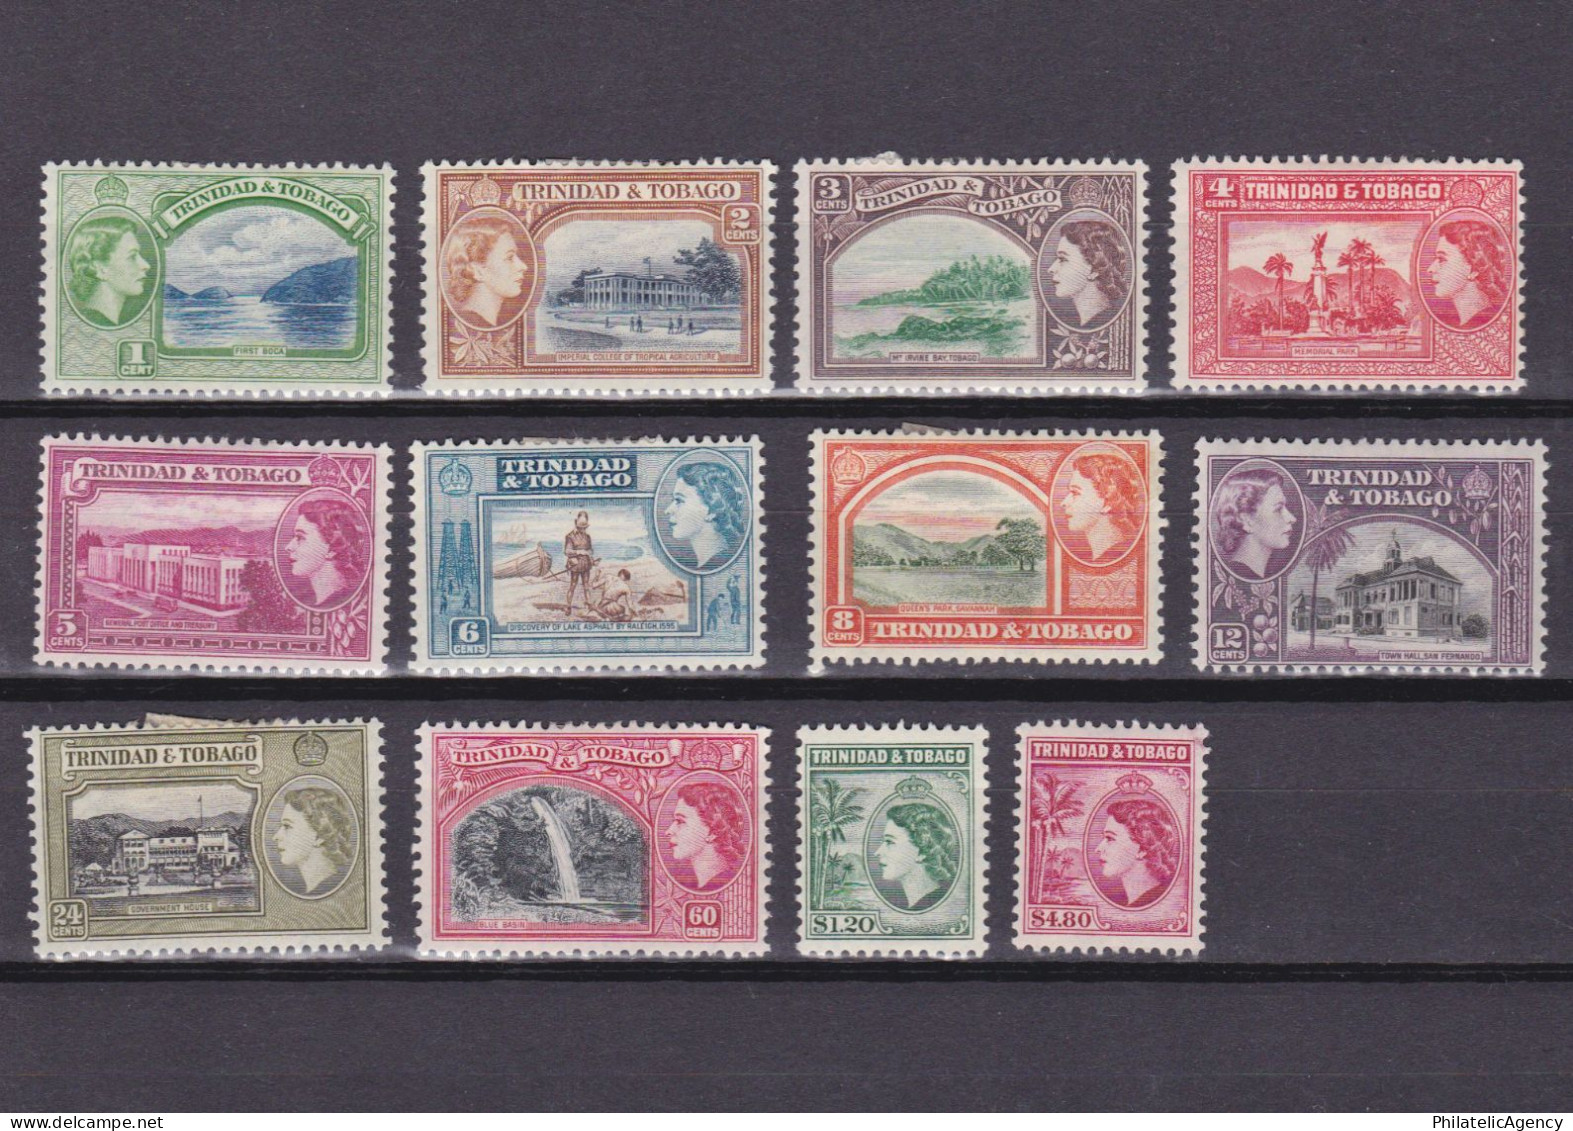 TRINIDAD & TOBAGO 1953, SG #267-278, CV £40, MH - Trindad & Tobago (...-1961)